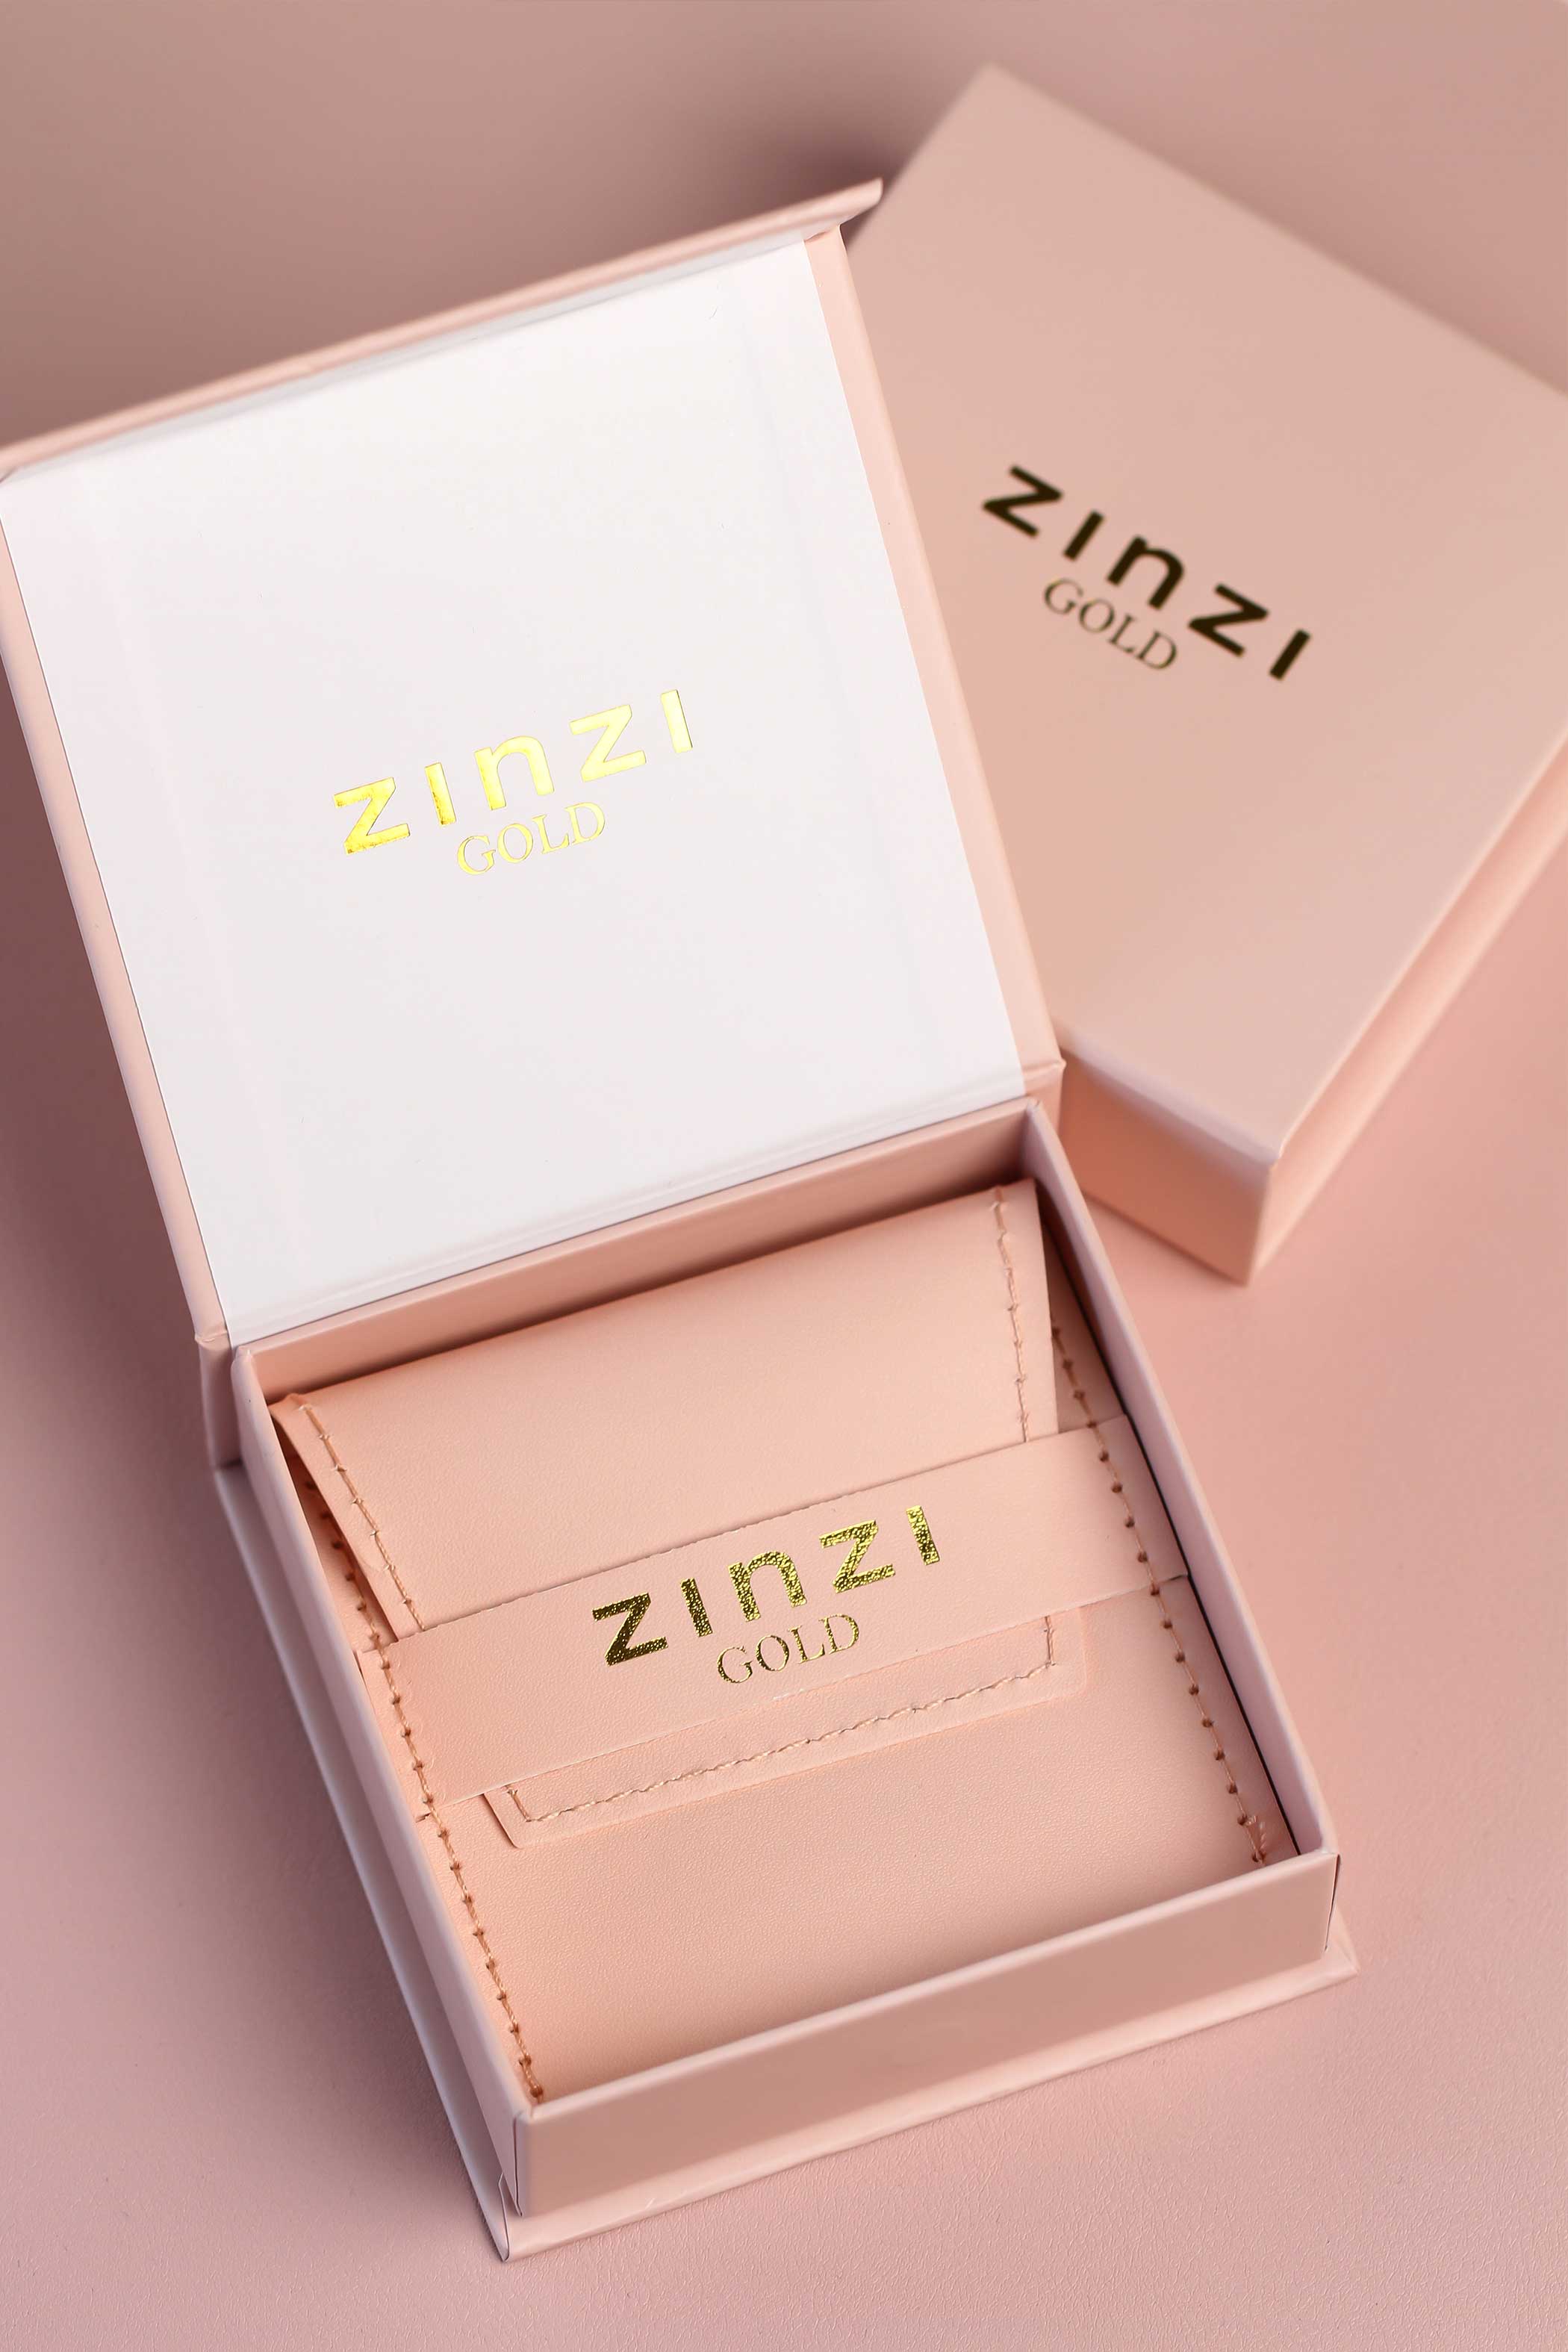 5mm ZINZI 14K Gold Stud Earrings Heart with Sun Rays ZGO340